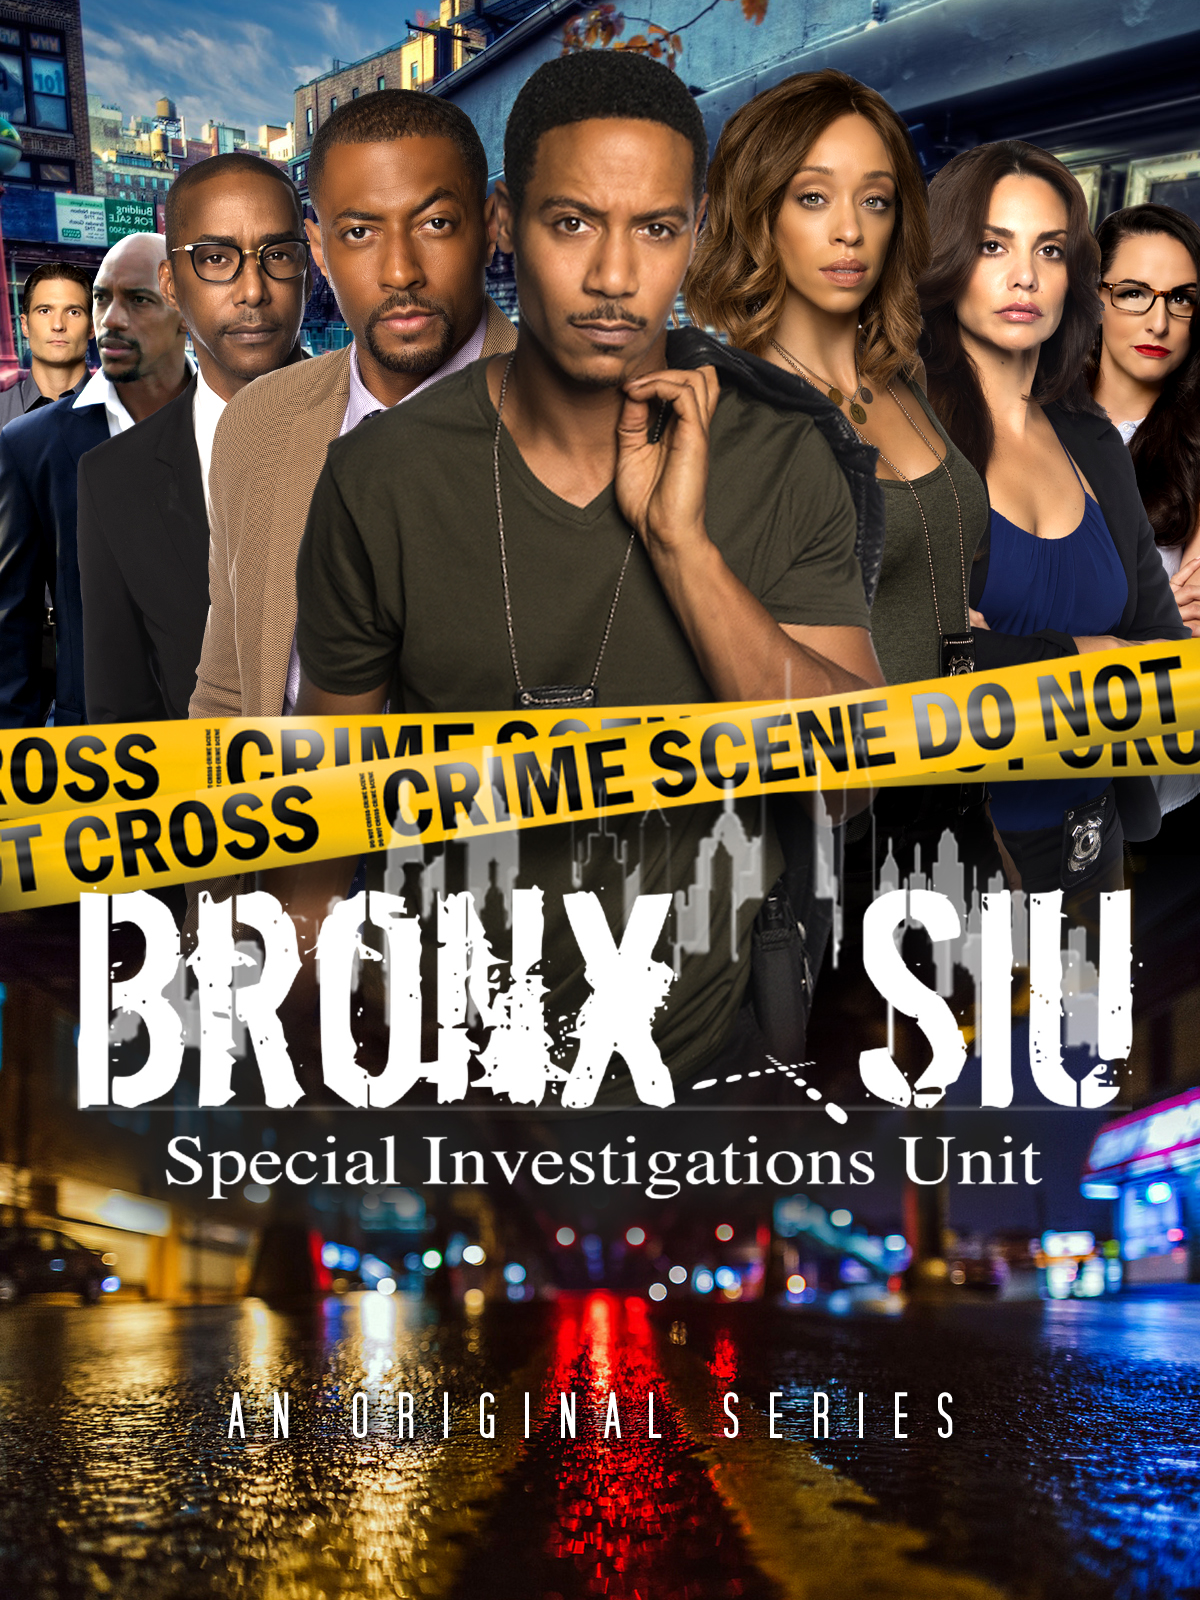 Bronx SIU (2018)